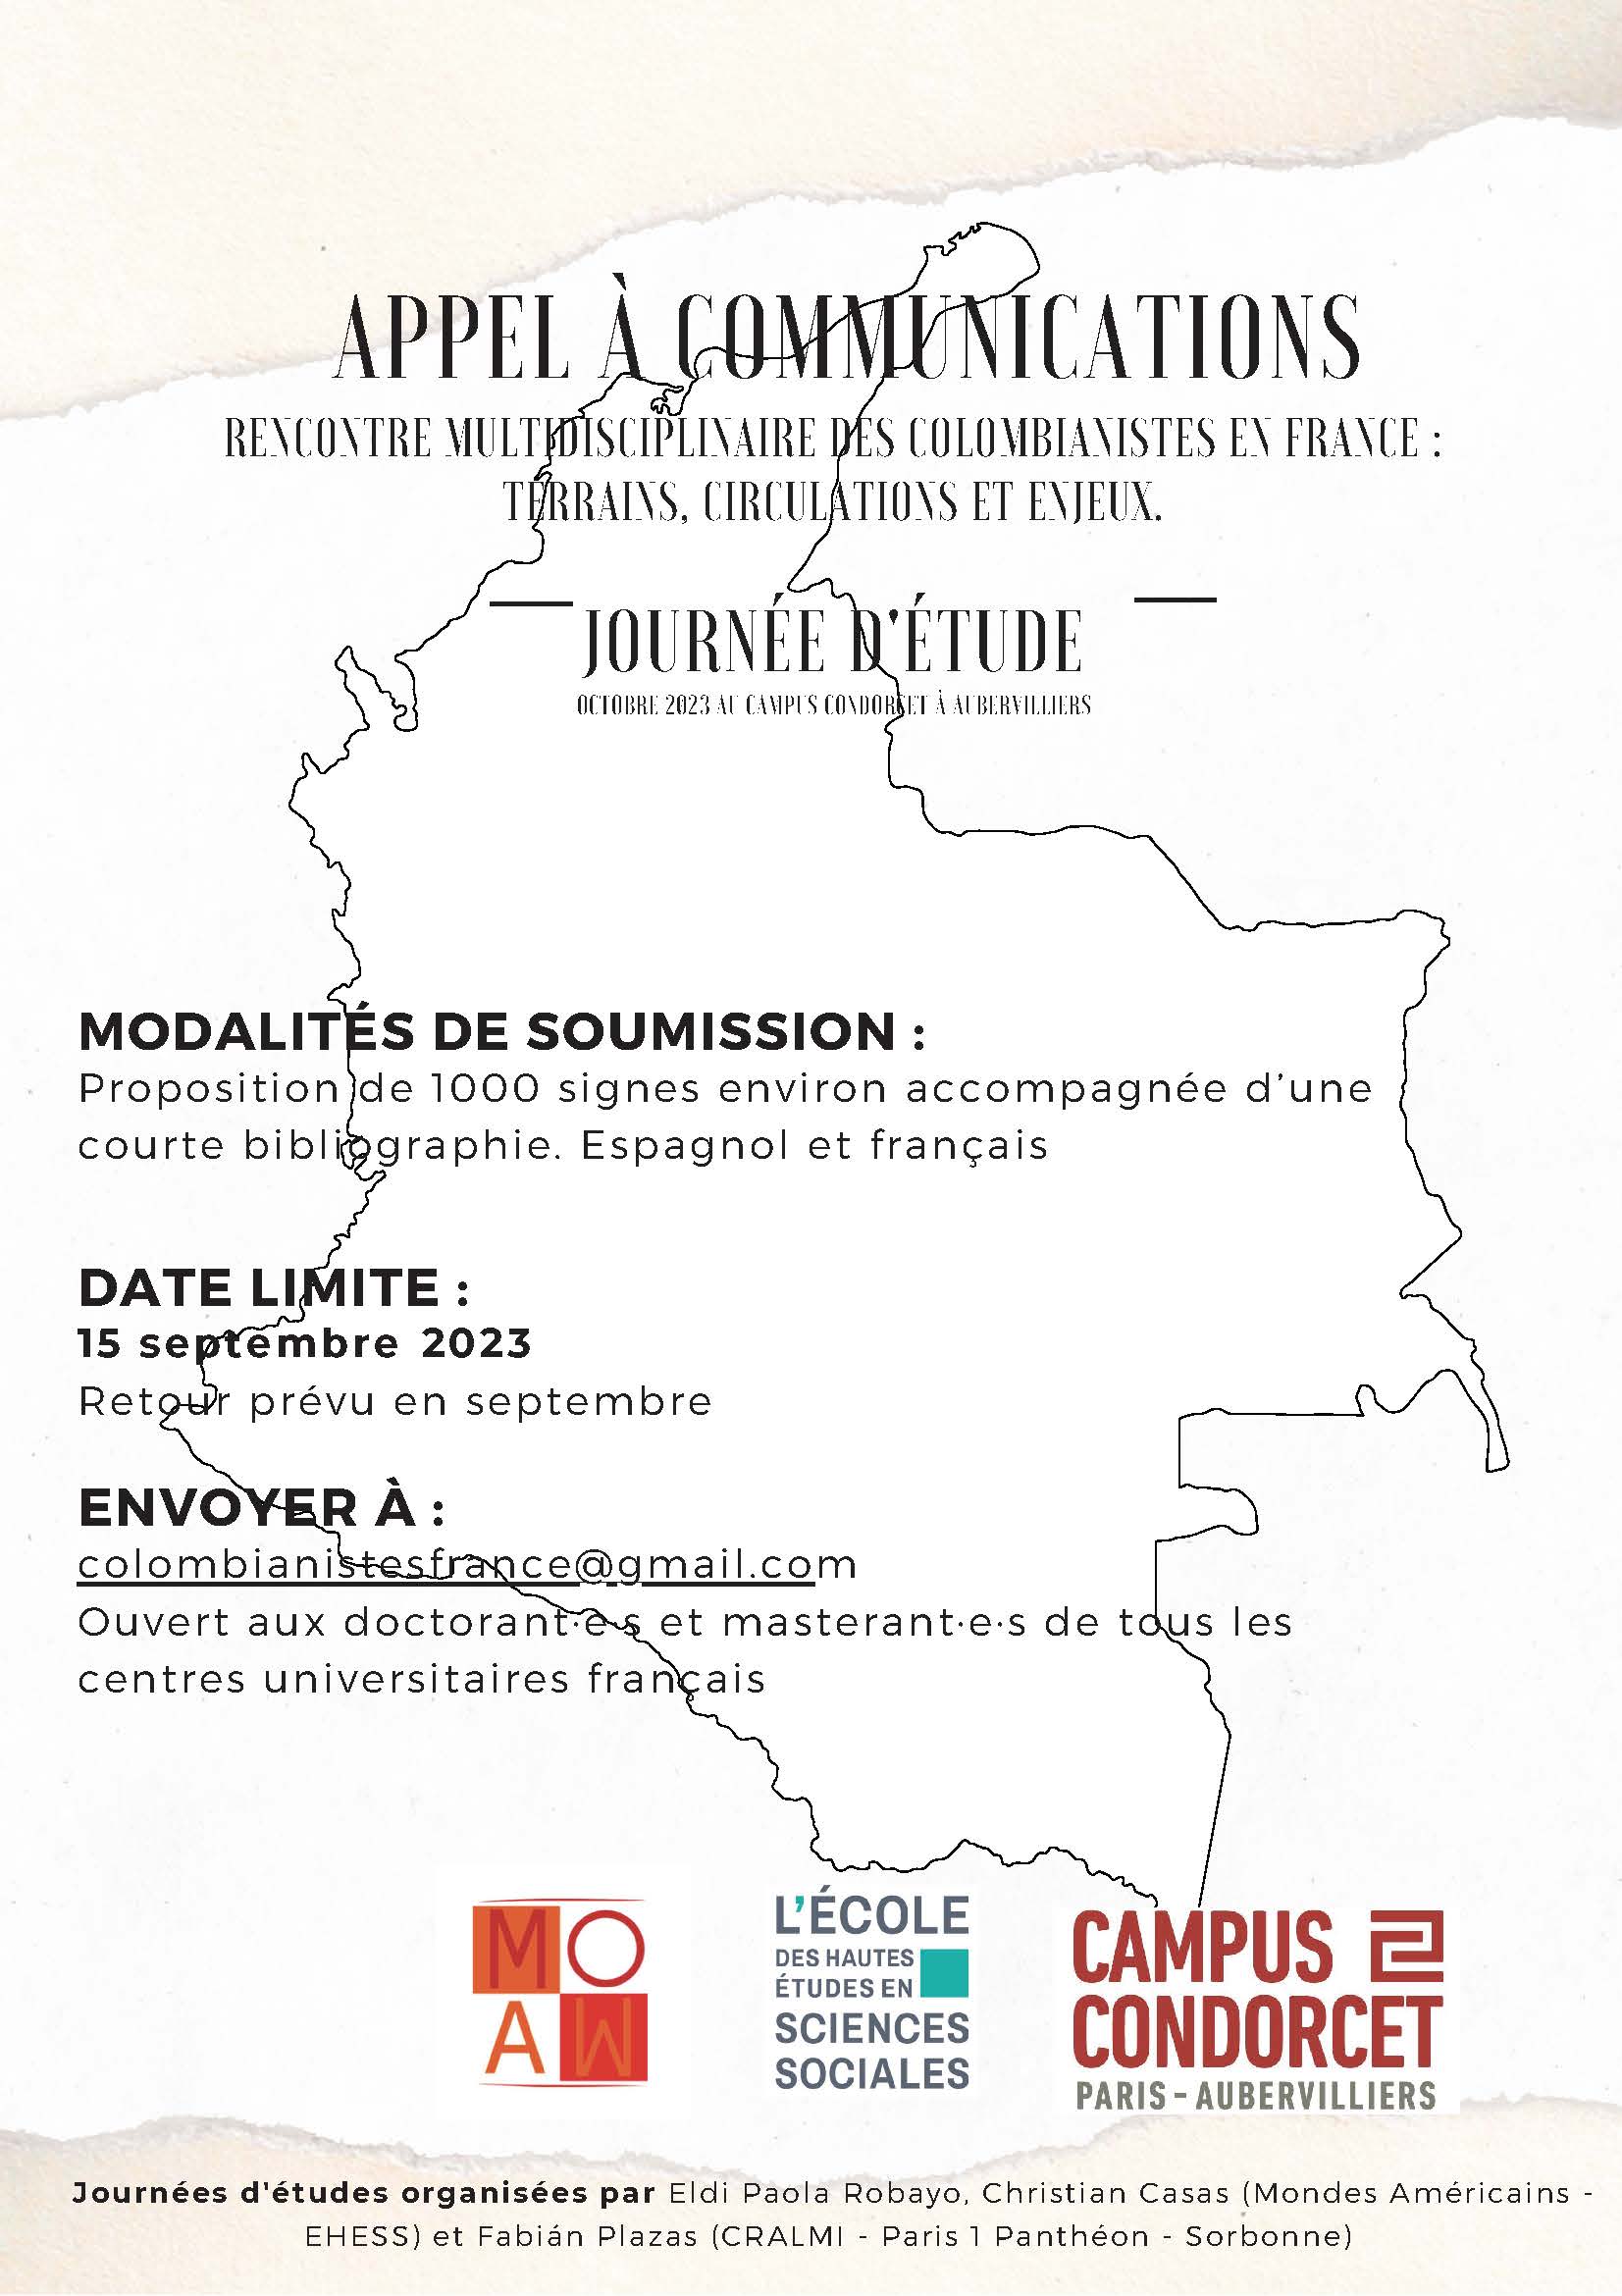 Appel à communications - Rencontre multidisciplinaire des colombianistes en France : terrains, circulations et enjeux